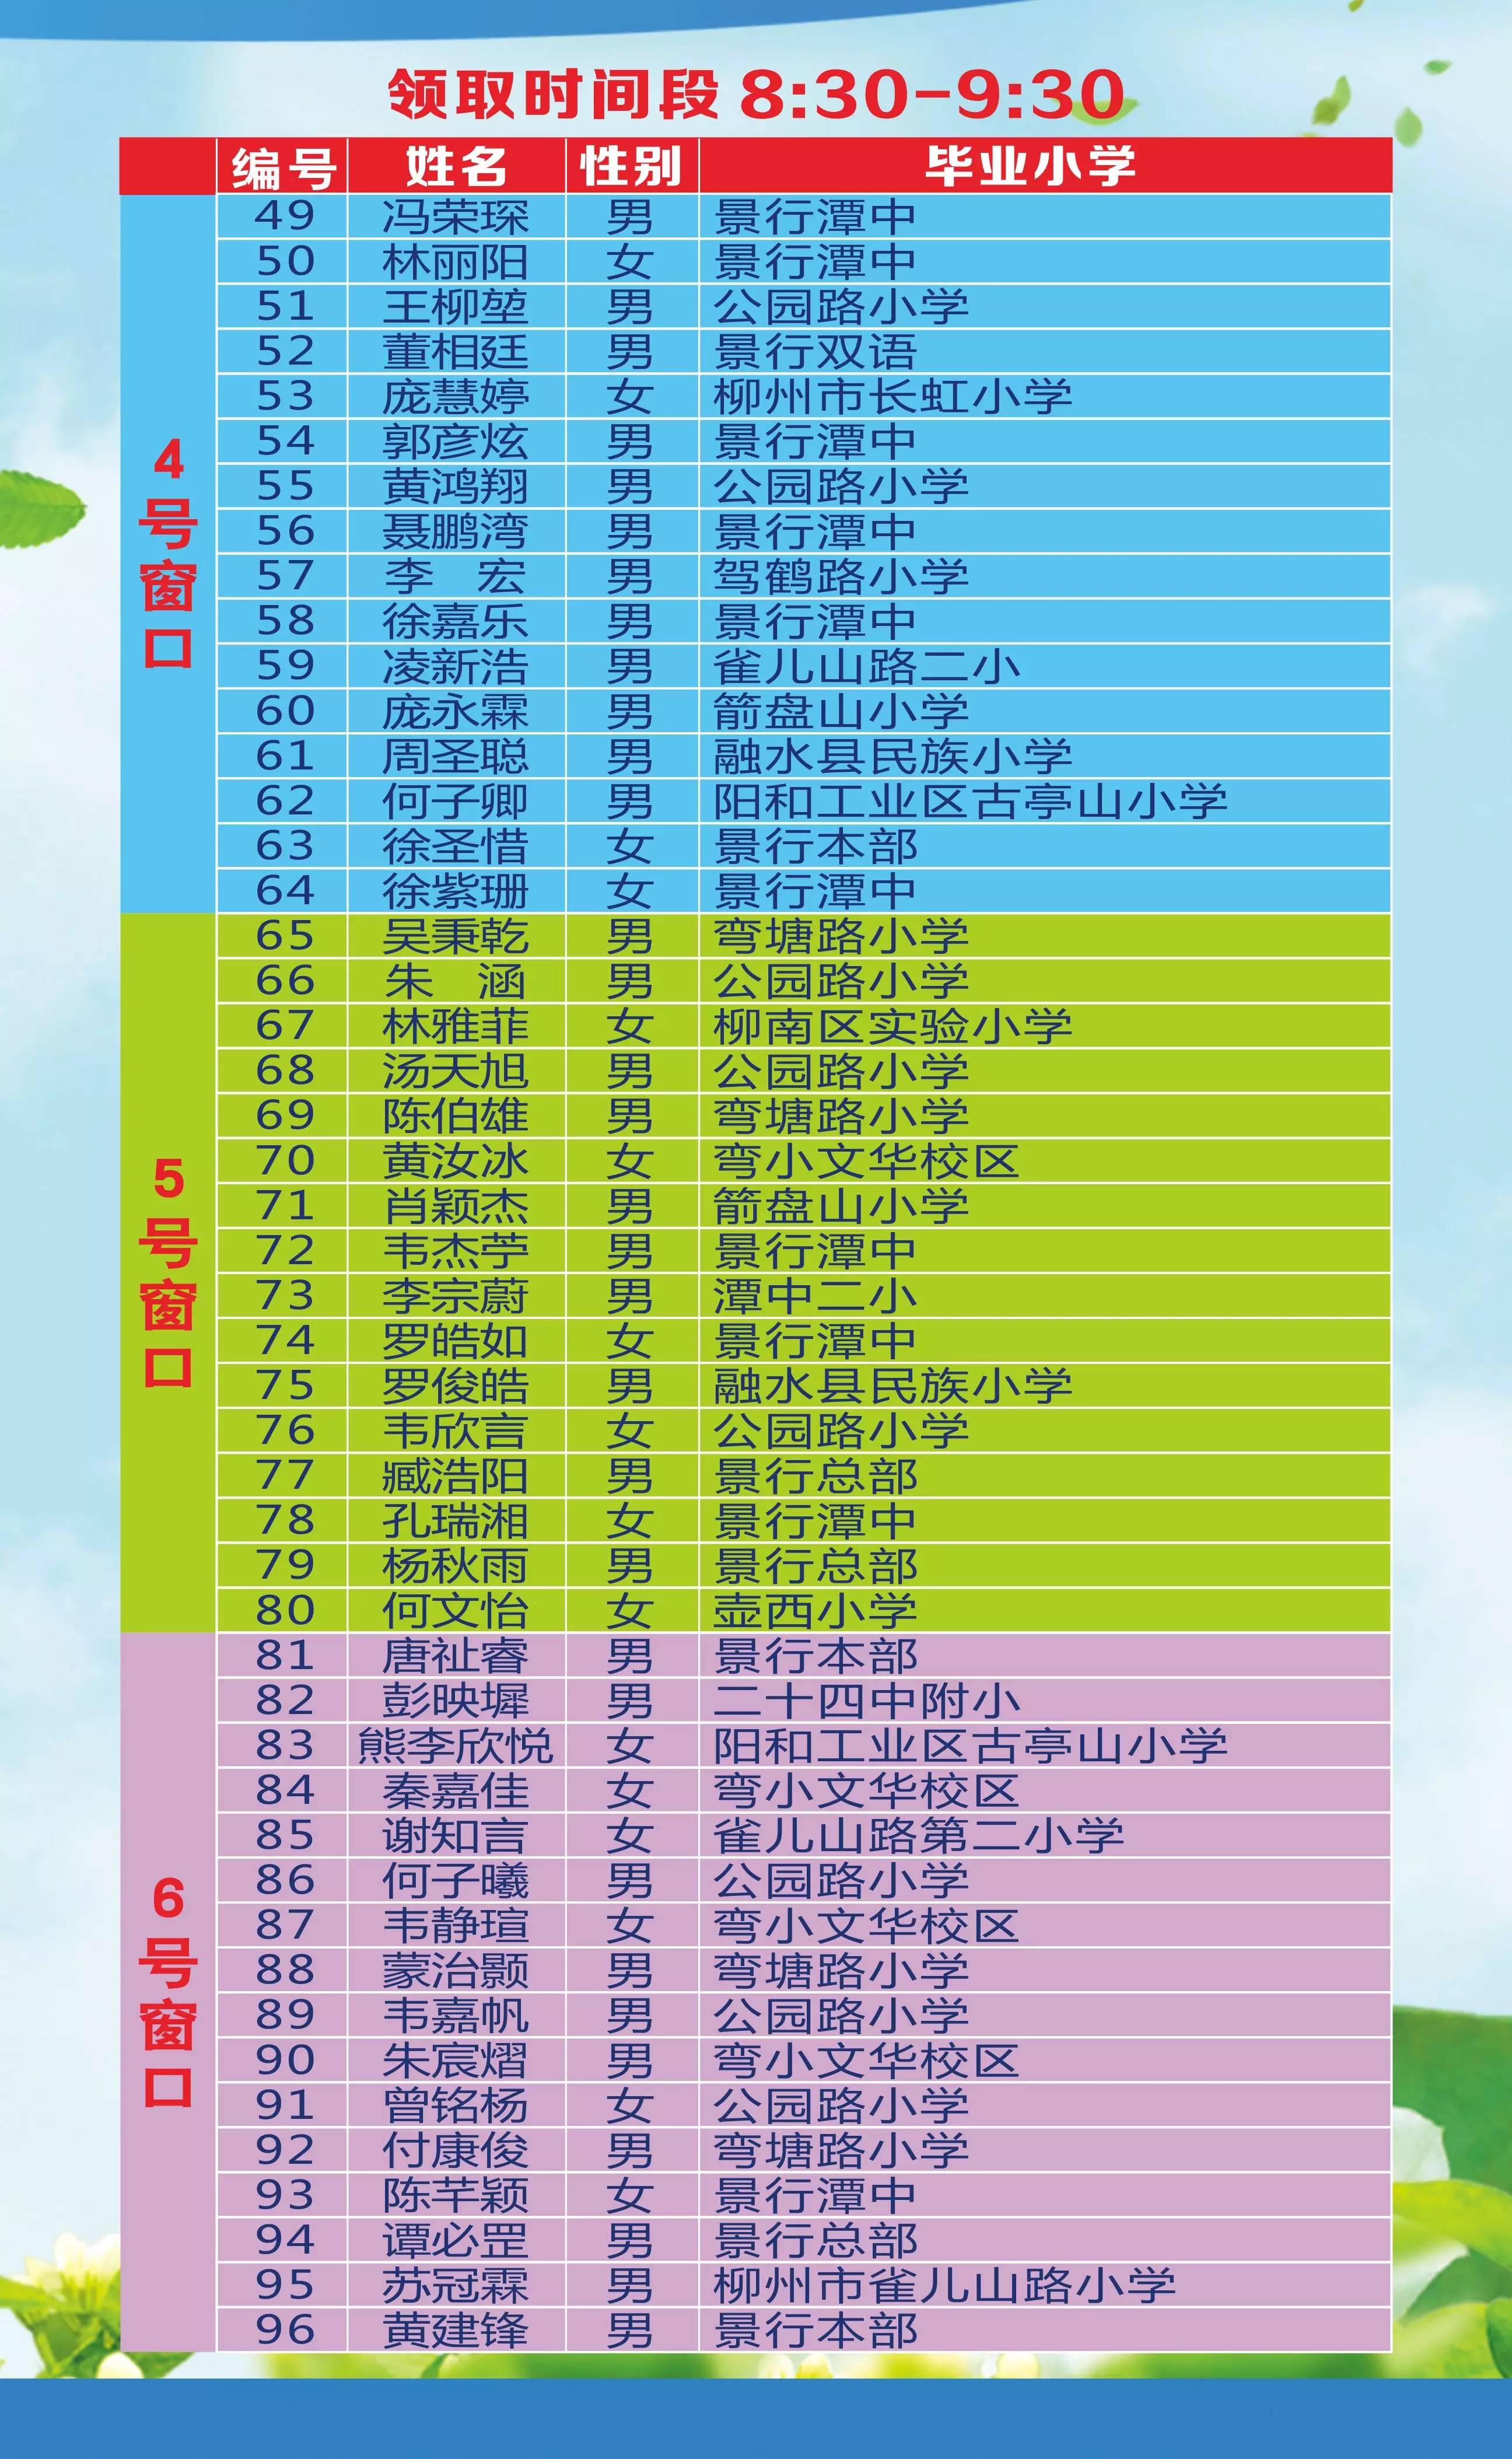 3、柳州技校名单：柳州哪个技校好？ 